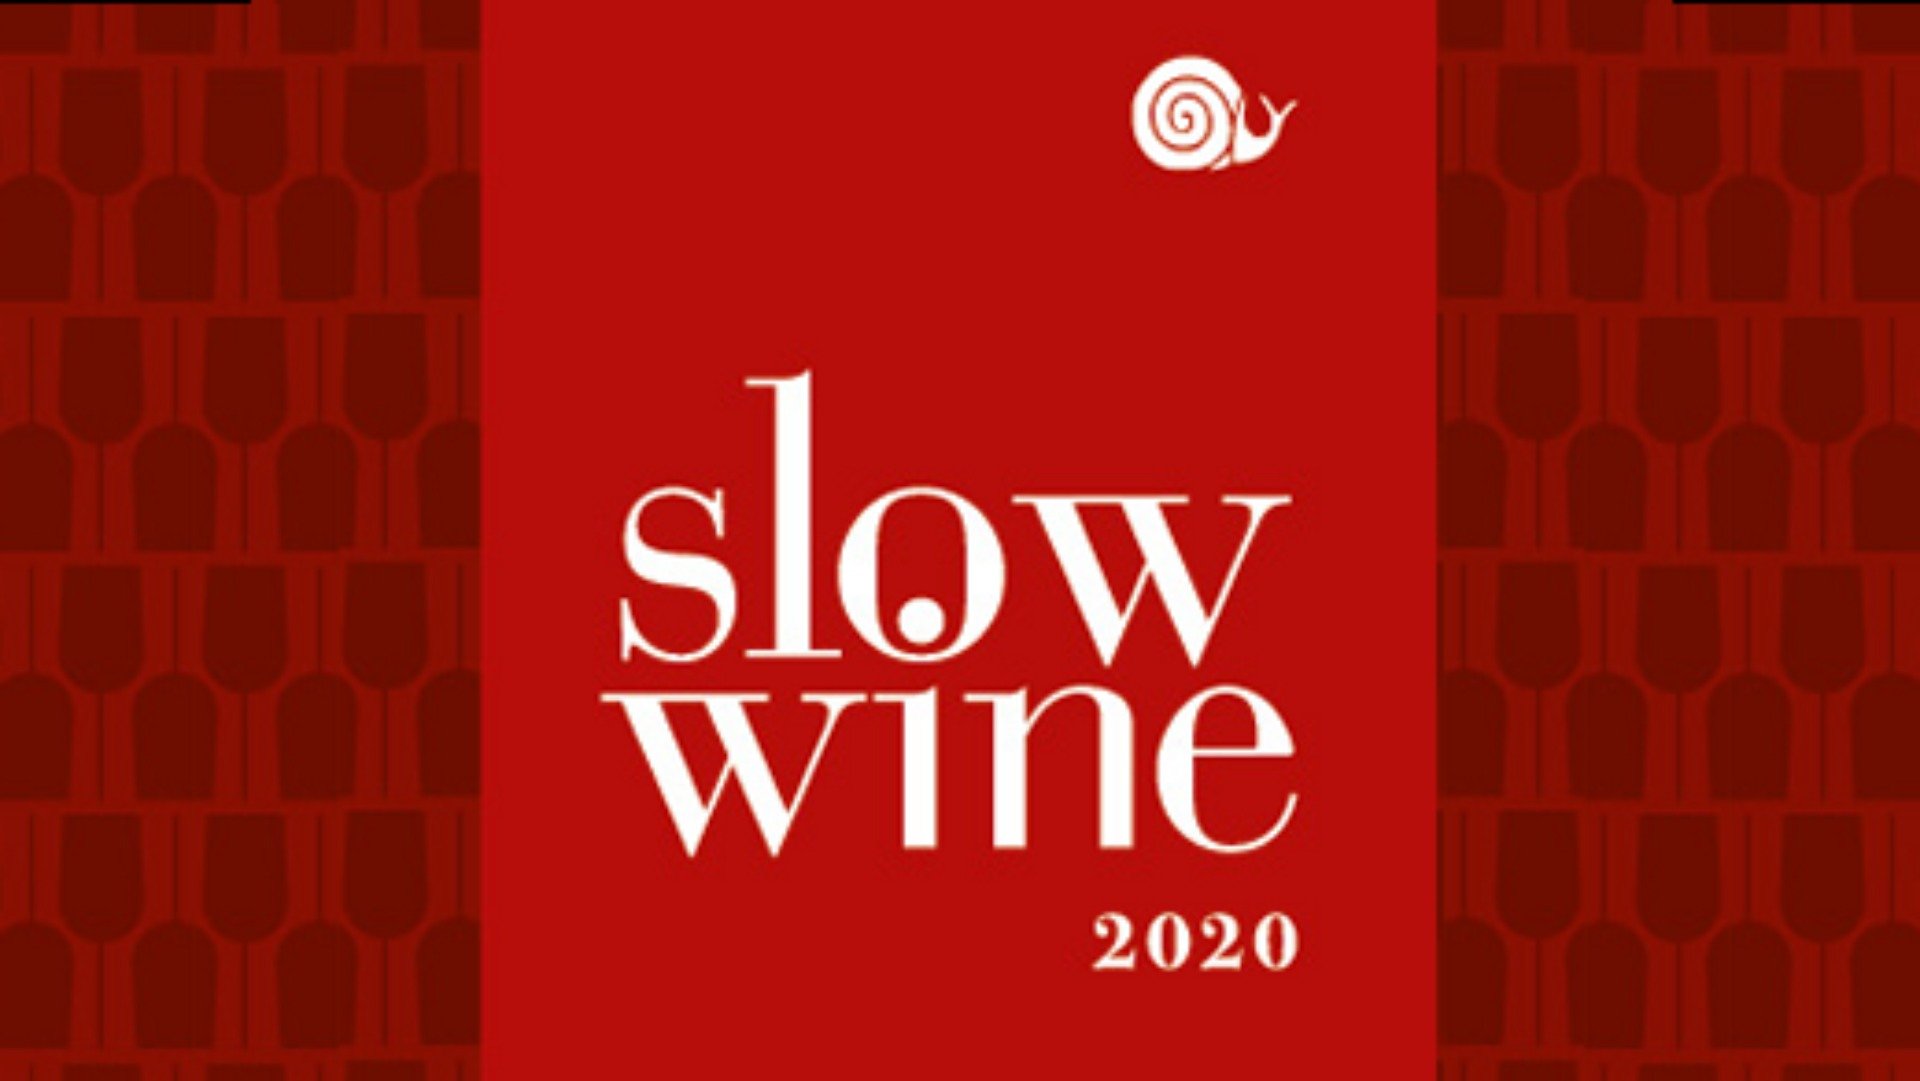 Immagine esplicativa gruppo Slow Wine 2020